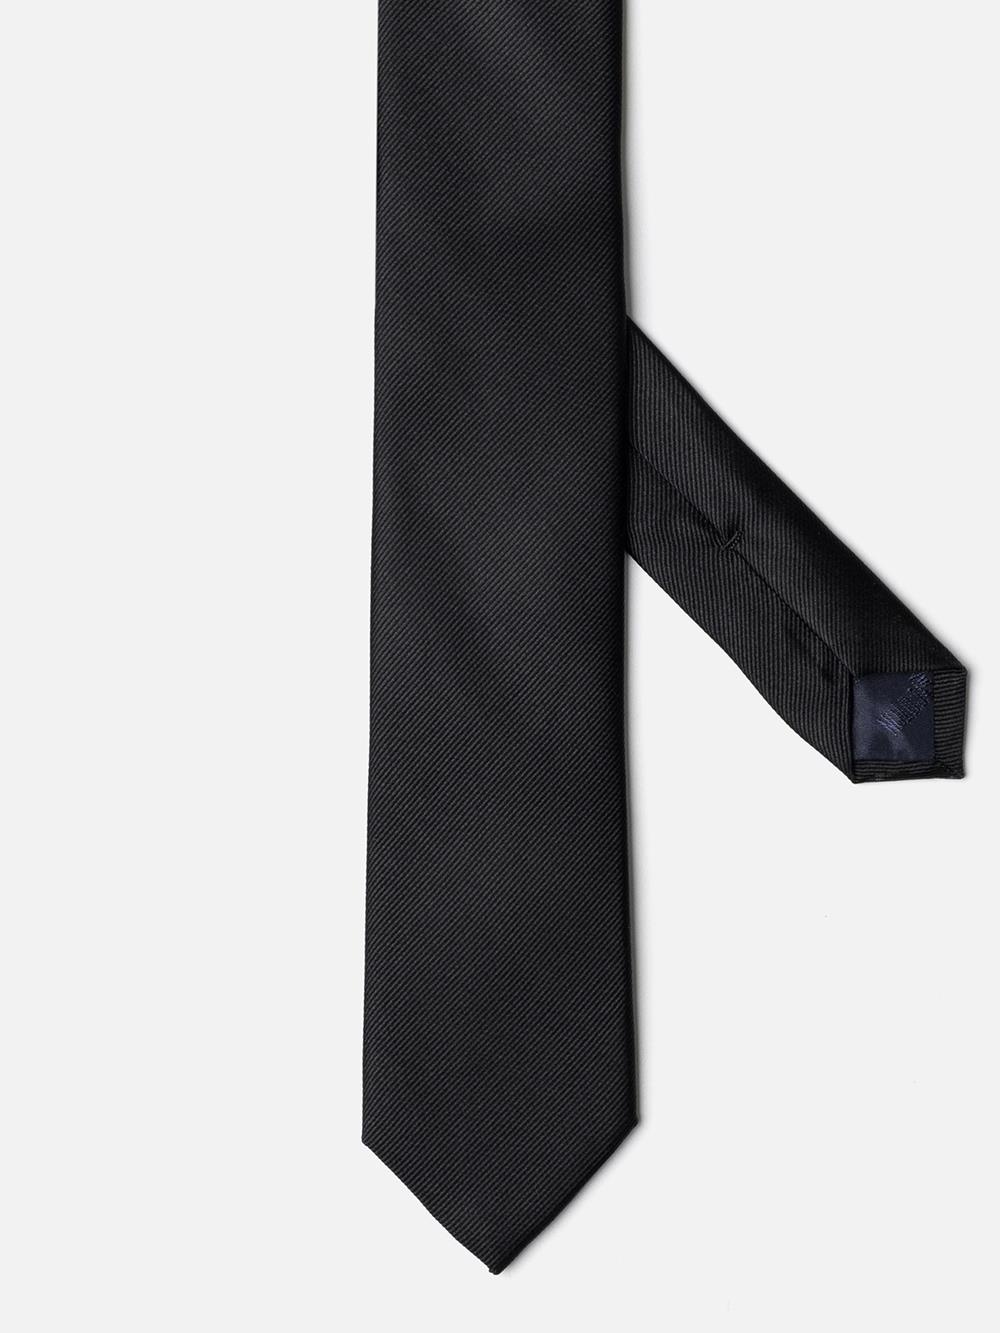 Cravate slim en soie sergée noire 